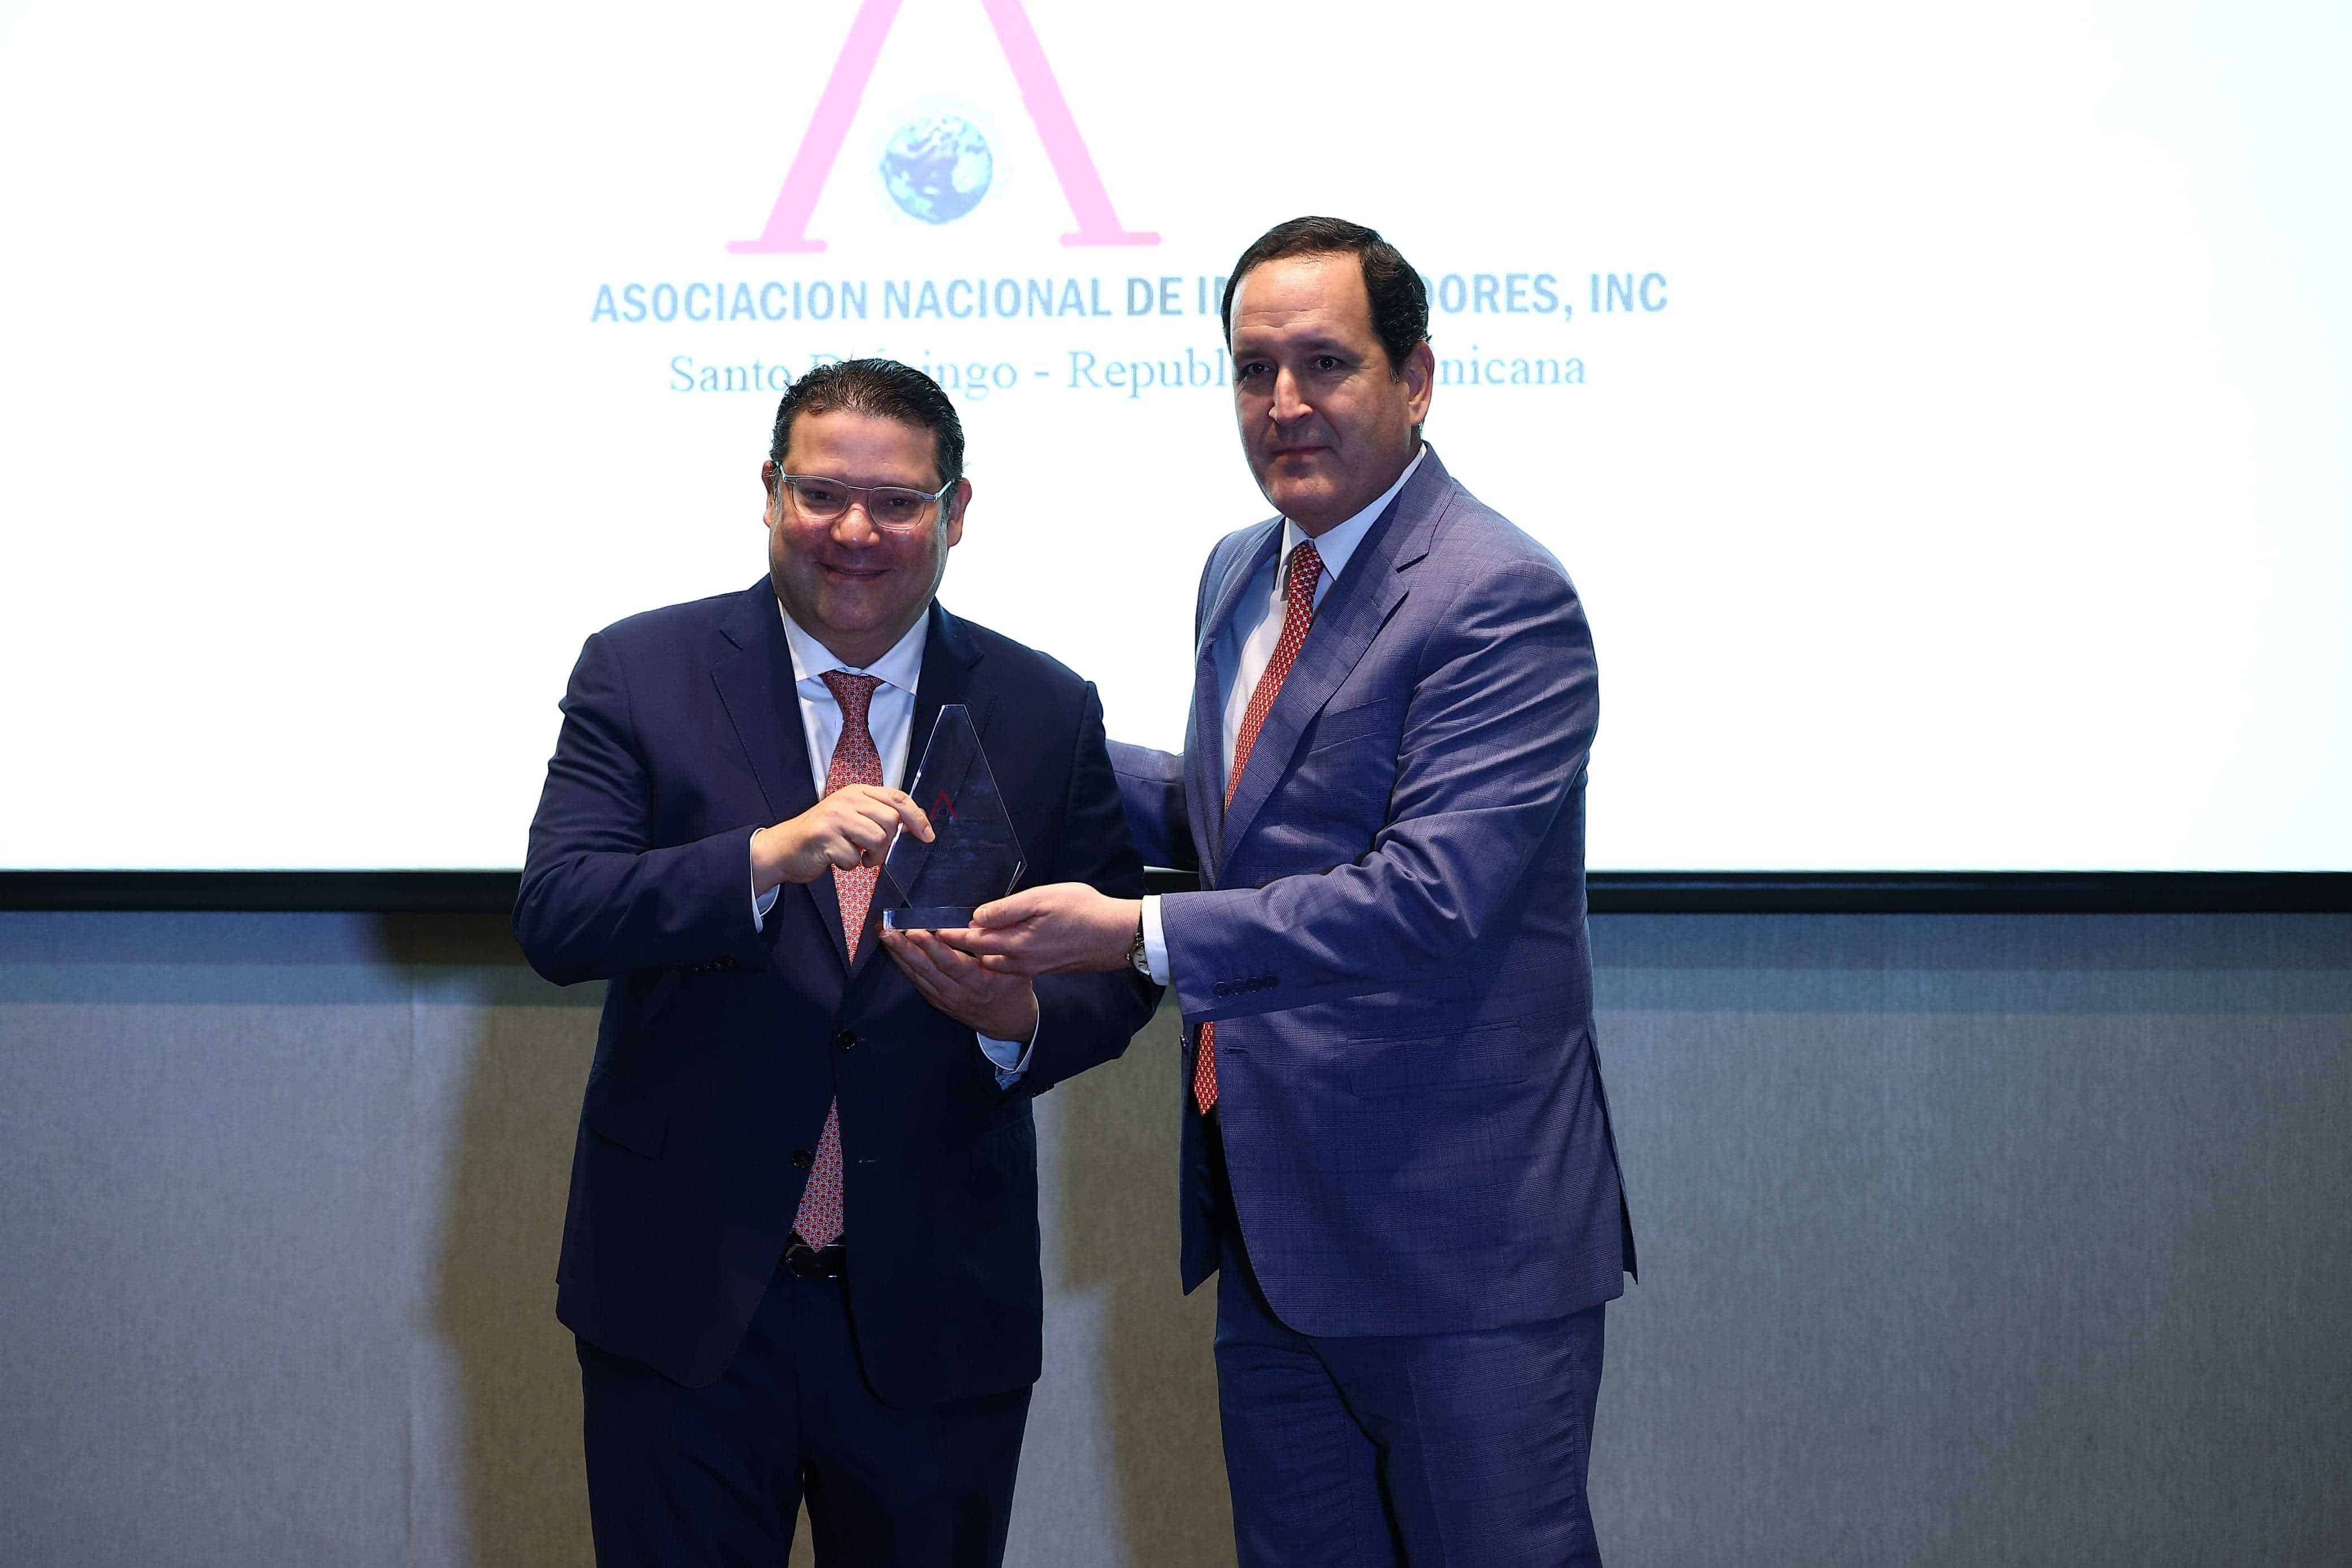 Eduardo Sanz Lovatón, director general de Aduanas (DGA), recibe el reconocimiento de José Antonio Álvarez, presidente de la Asociación Nacional de Importadores (ANI).